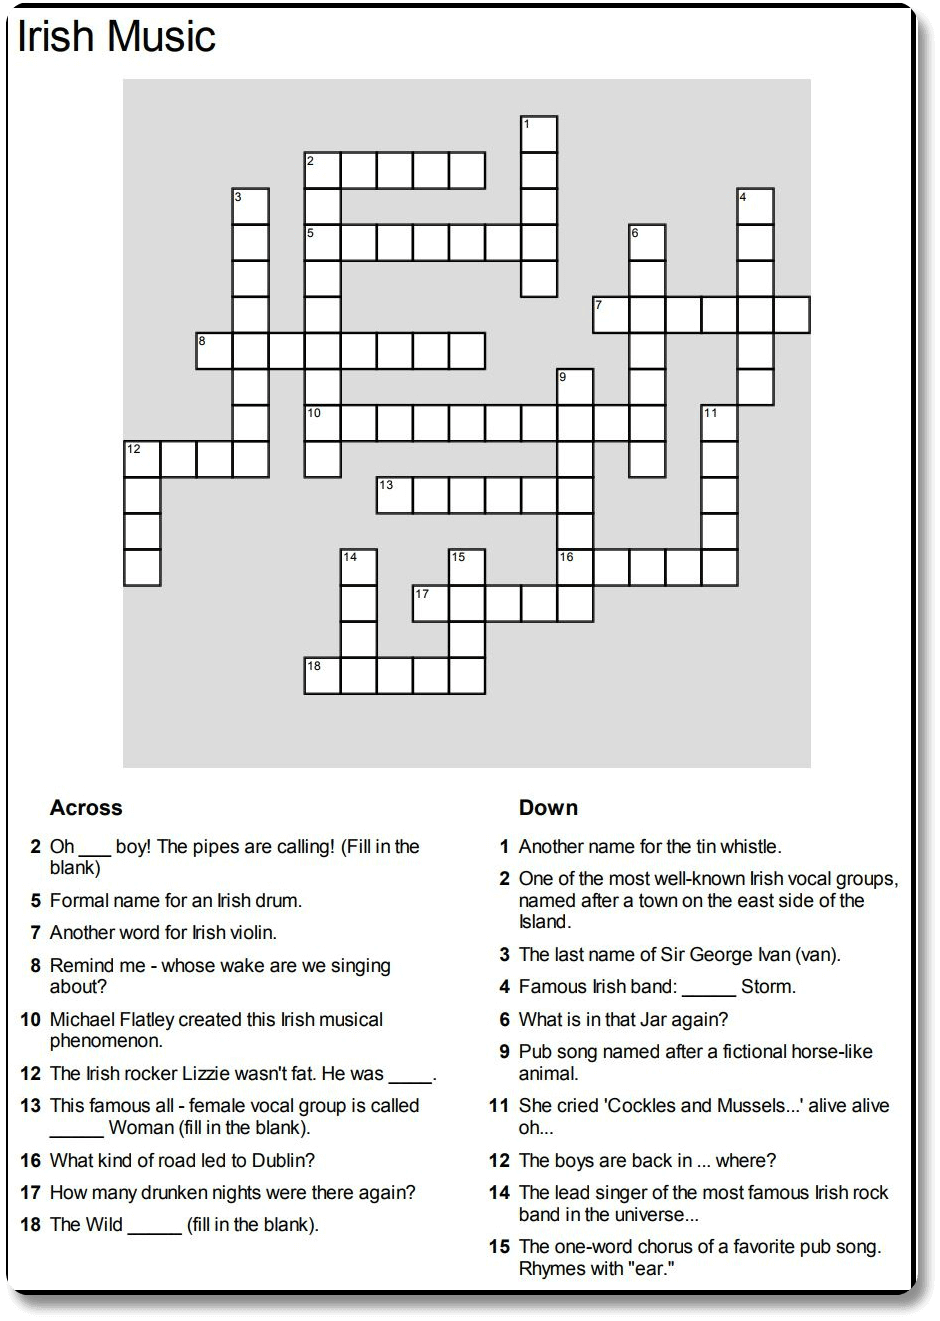 Irish Music Crossword Puzzle